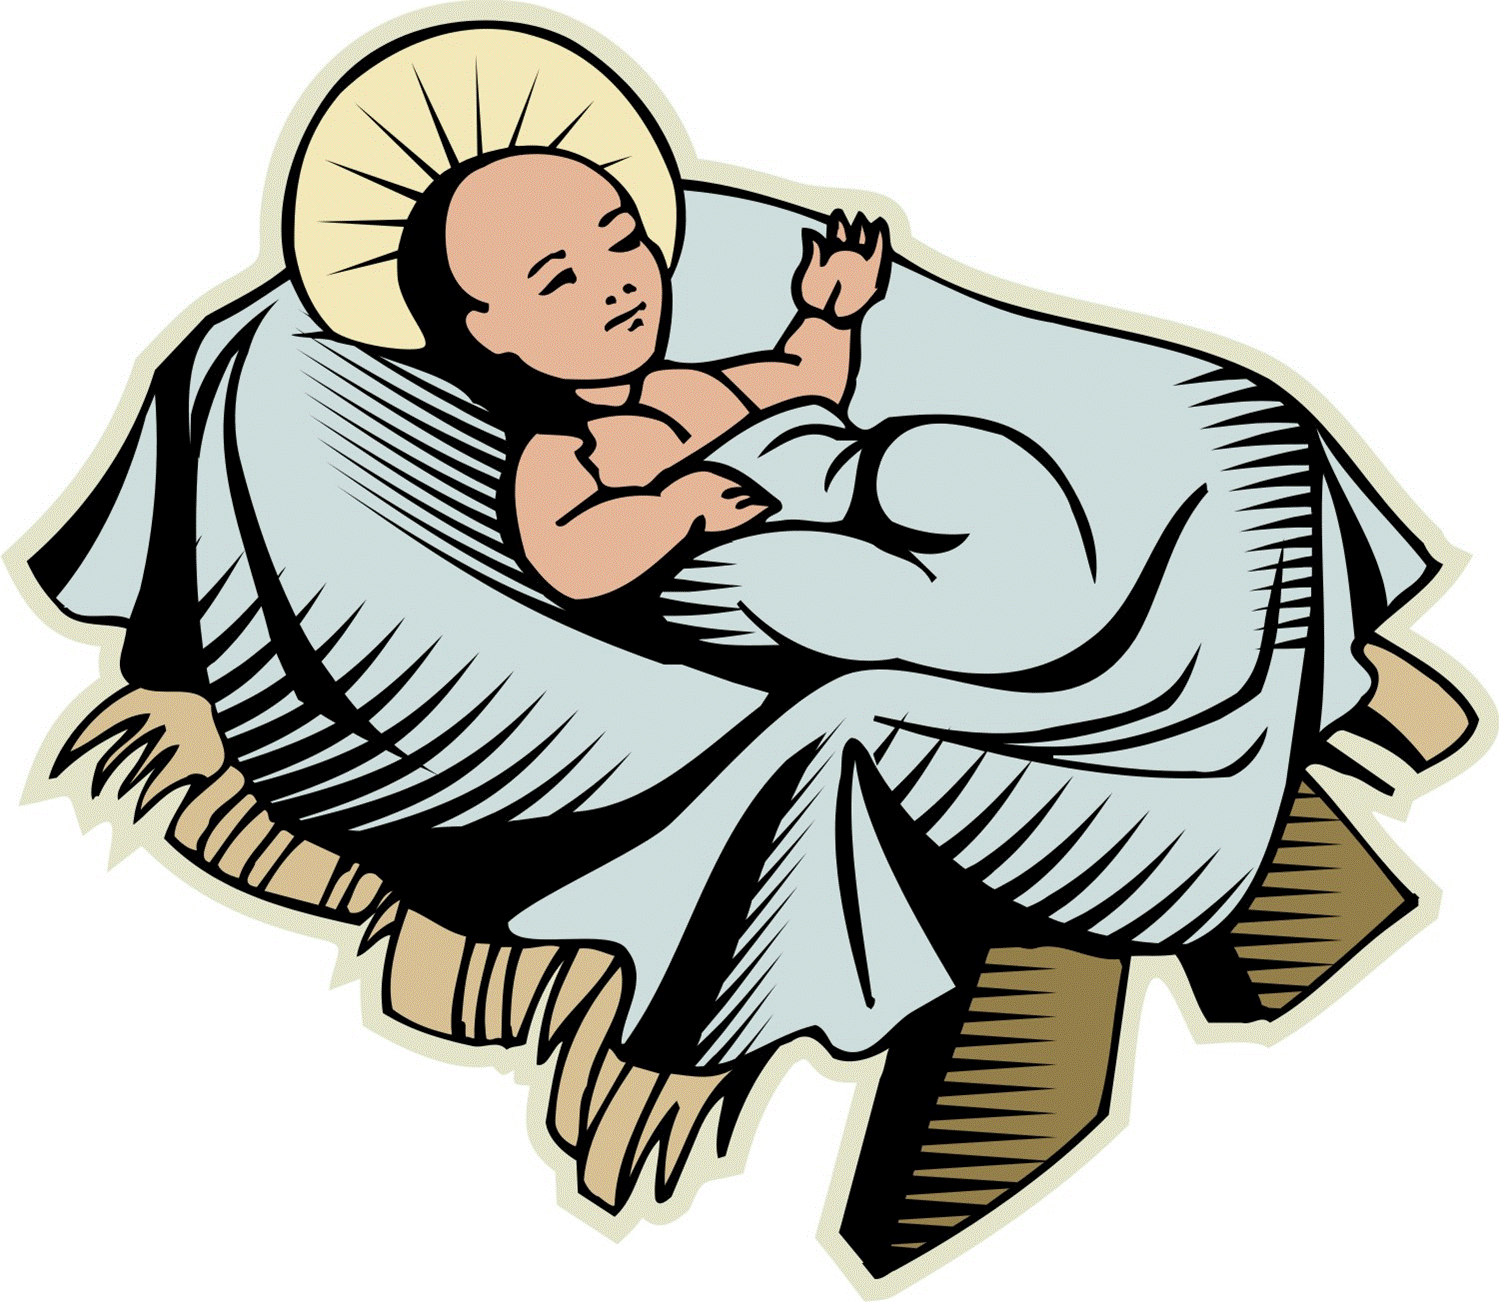 Baby jesus in a manger clip art - ClipartFox